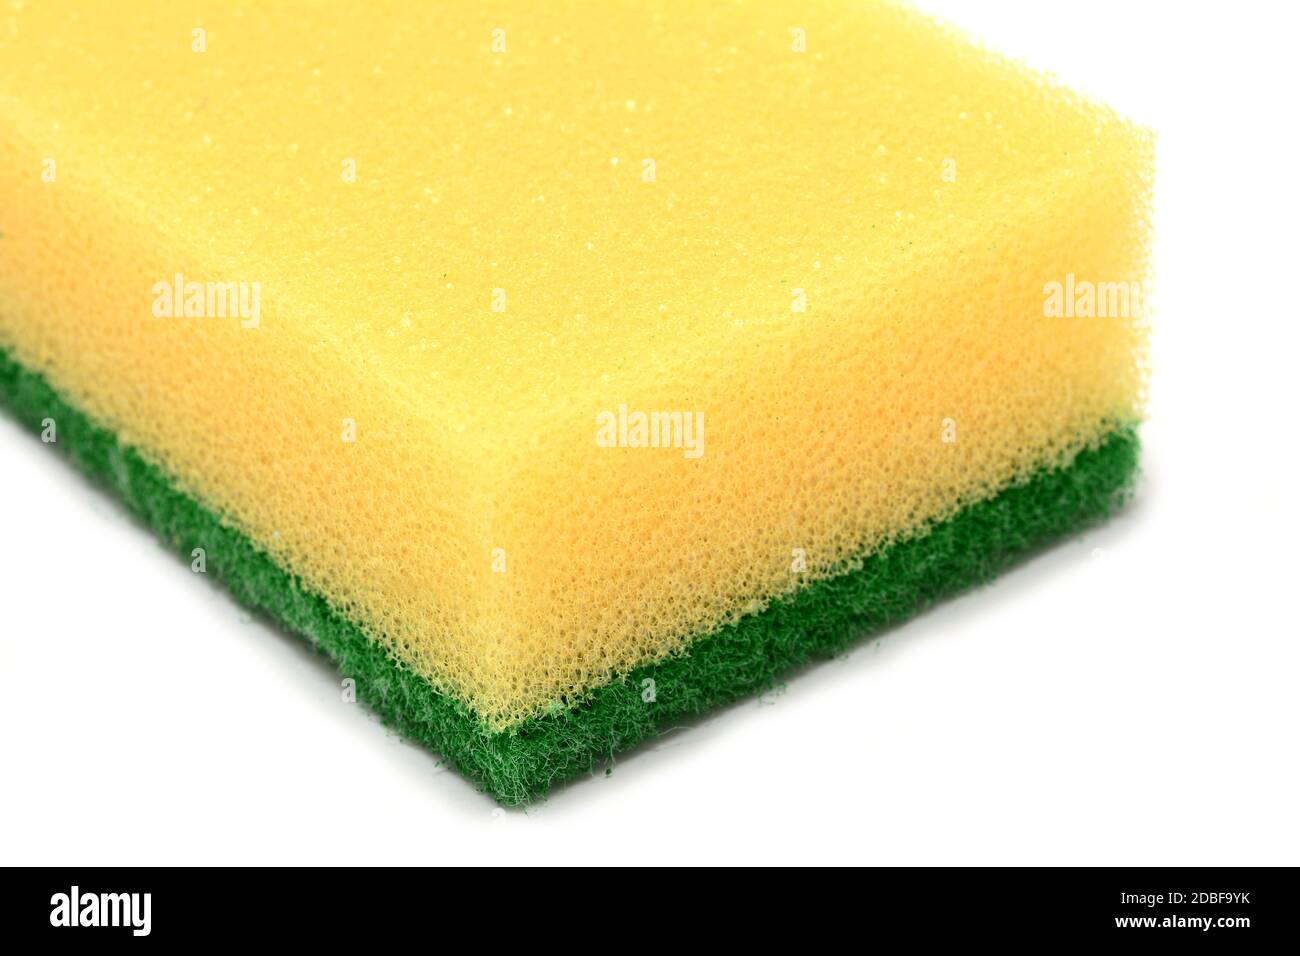 https://c8.alamy.com/compes/2dbf9yk/esponja-amarilla-de-cocina-con-estropajo-verde-abrasivo-sobre-fondo-blanco-2dbf9yk.jpg